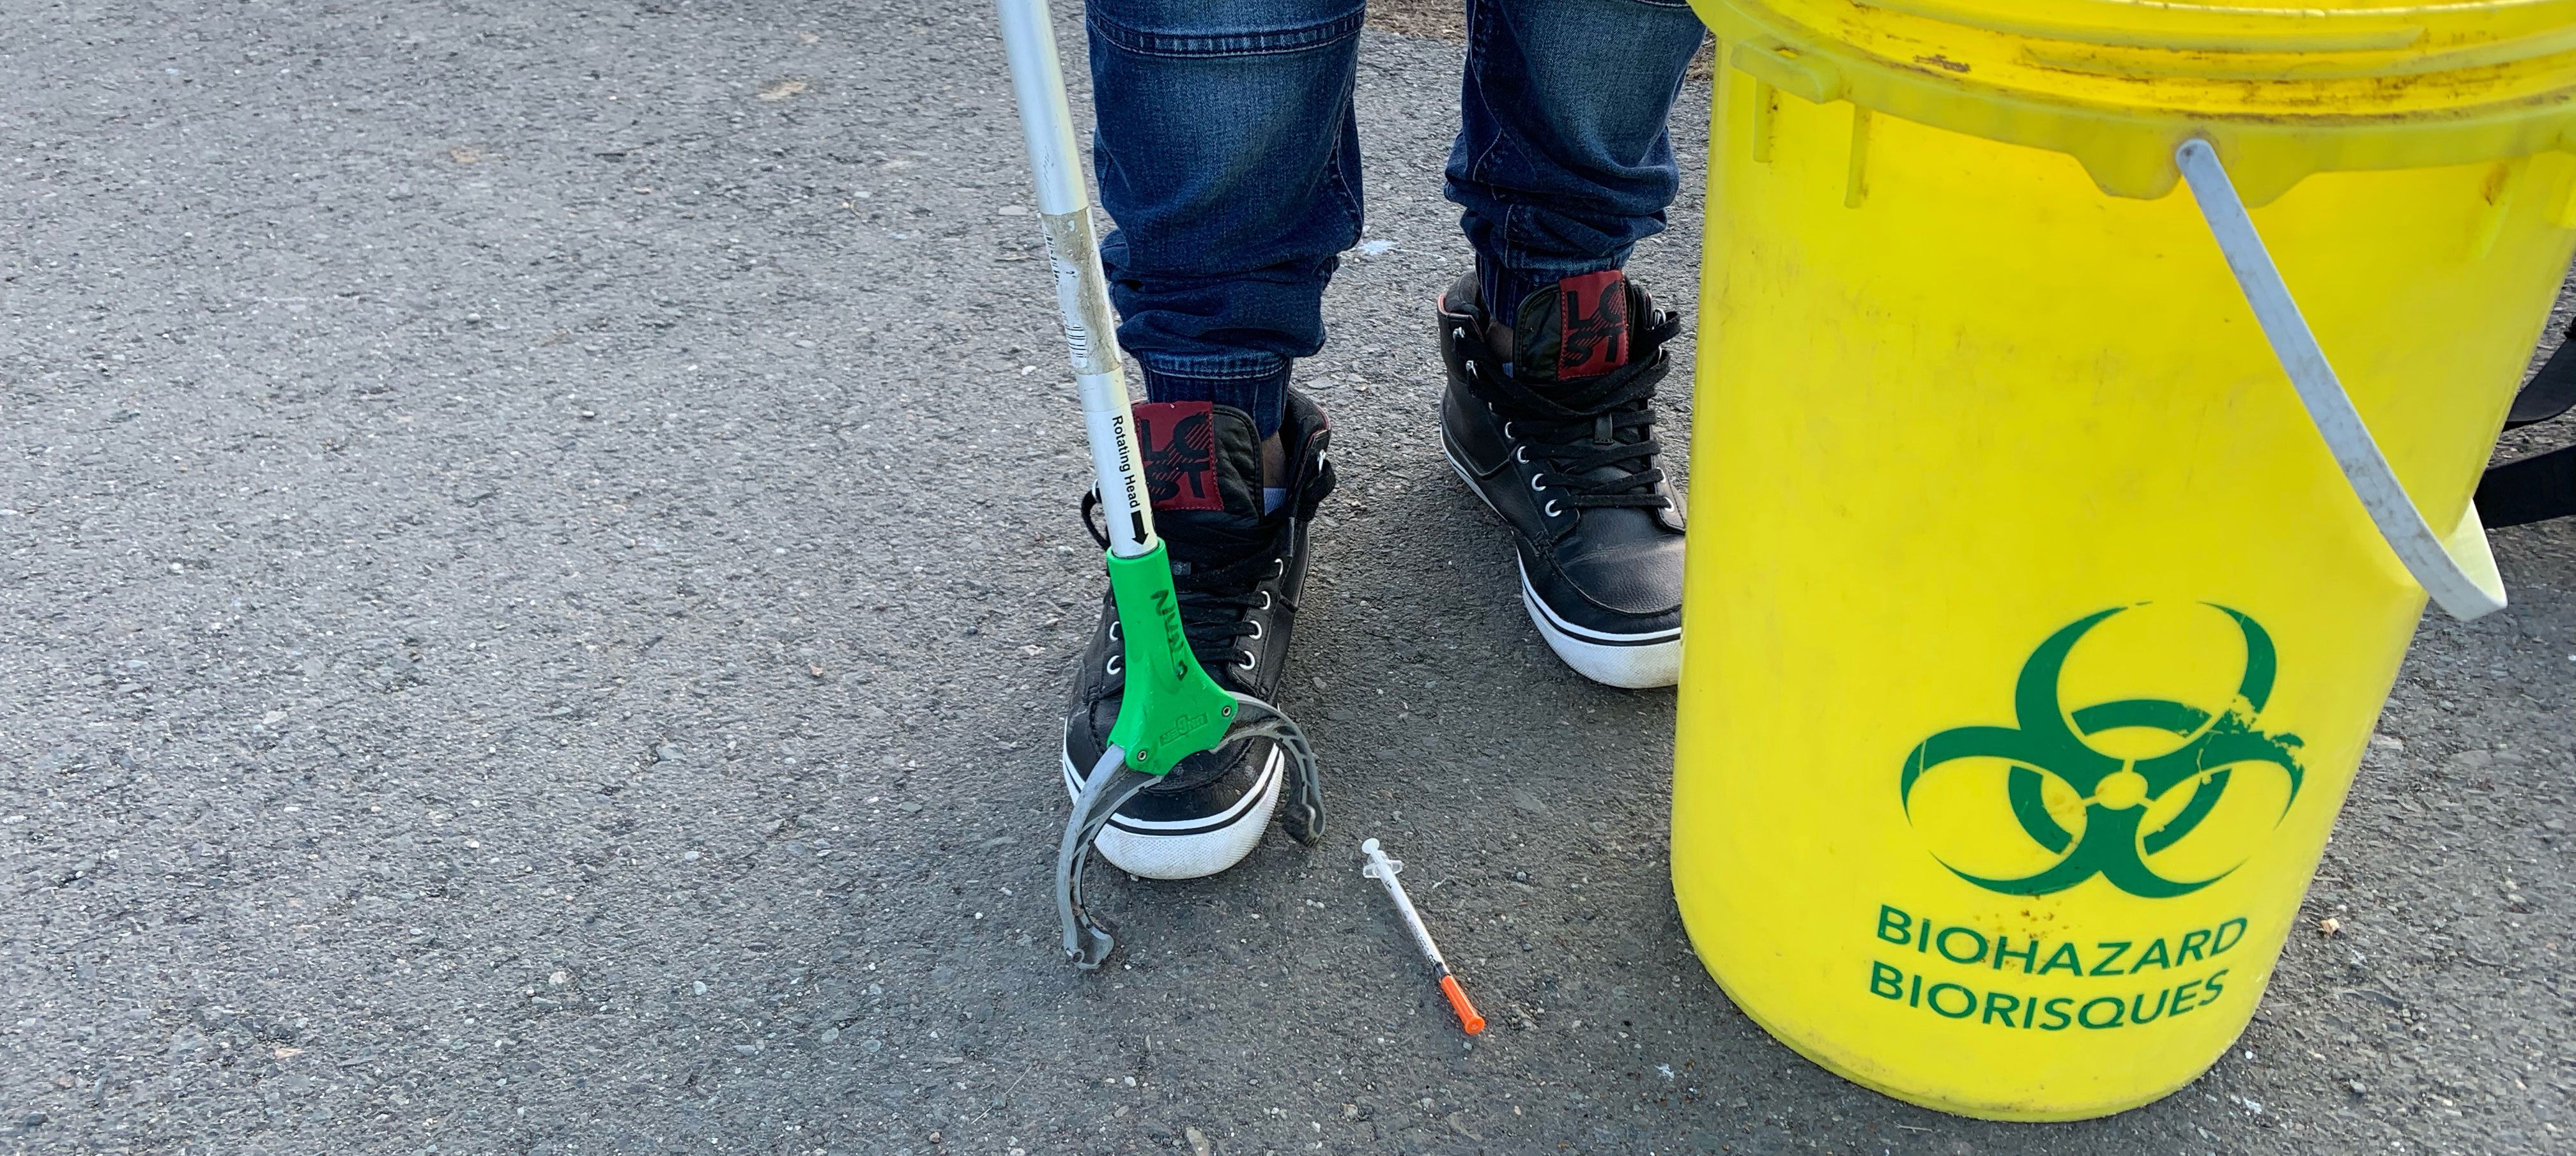 sharps needle pick up with biohazard bucket